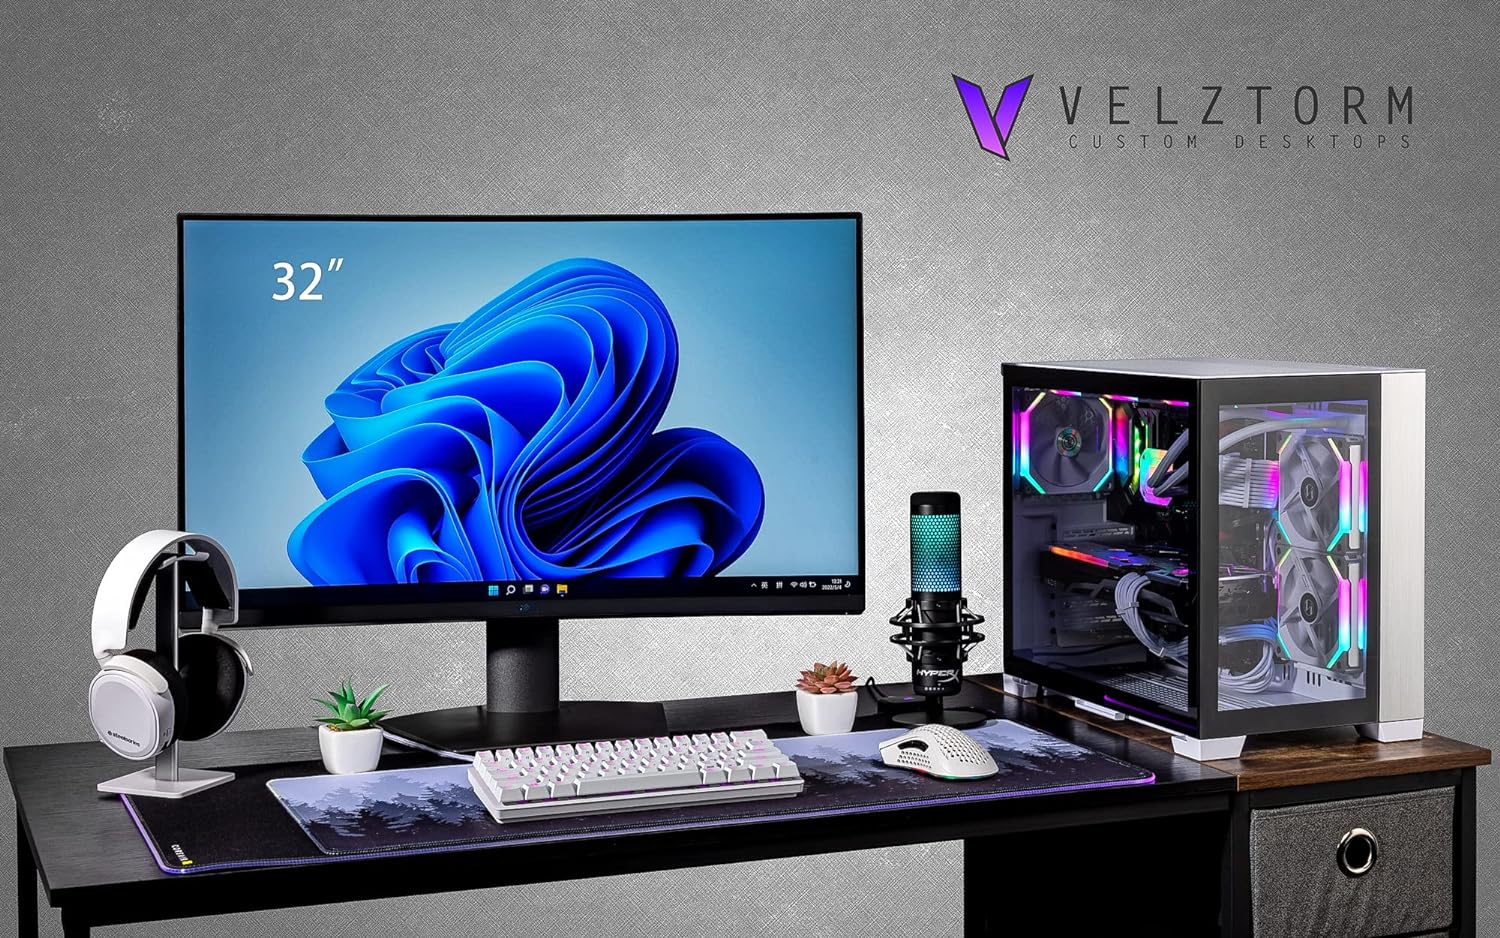 Velztorm Mini Lux Gaming Desktop PC (AMD Ryzen 9 5950X 16-Core, Radeon RX 7900 XTX, 32GB RAM, 2TB PCIe SSD + 2TB HDD (3.5), WiFi, USB 3.2, HDMI, Display Port, Win 10 Pro)